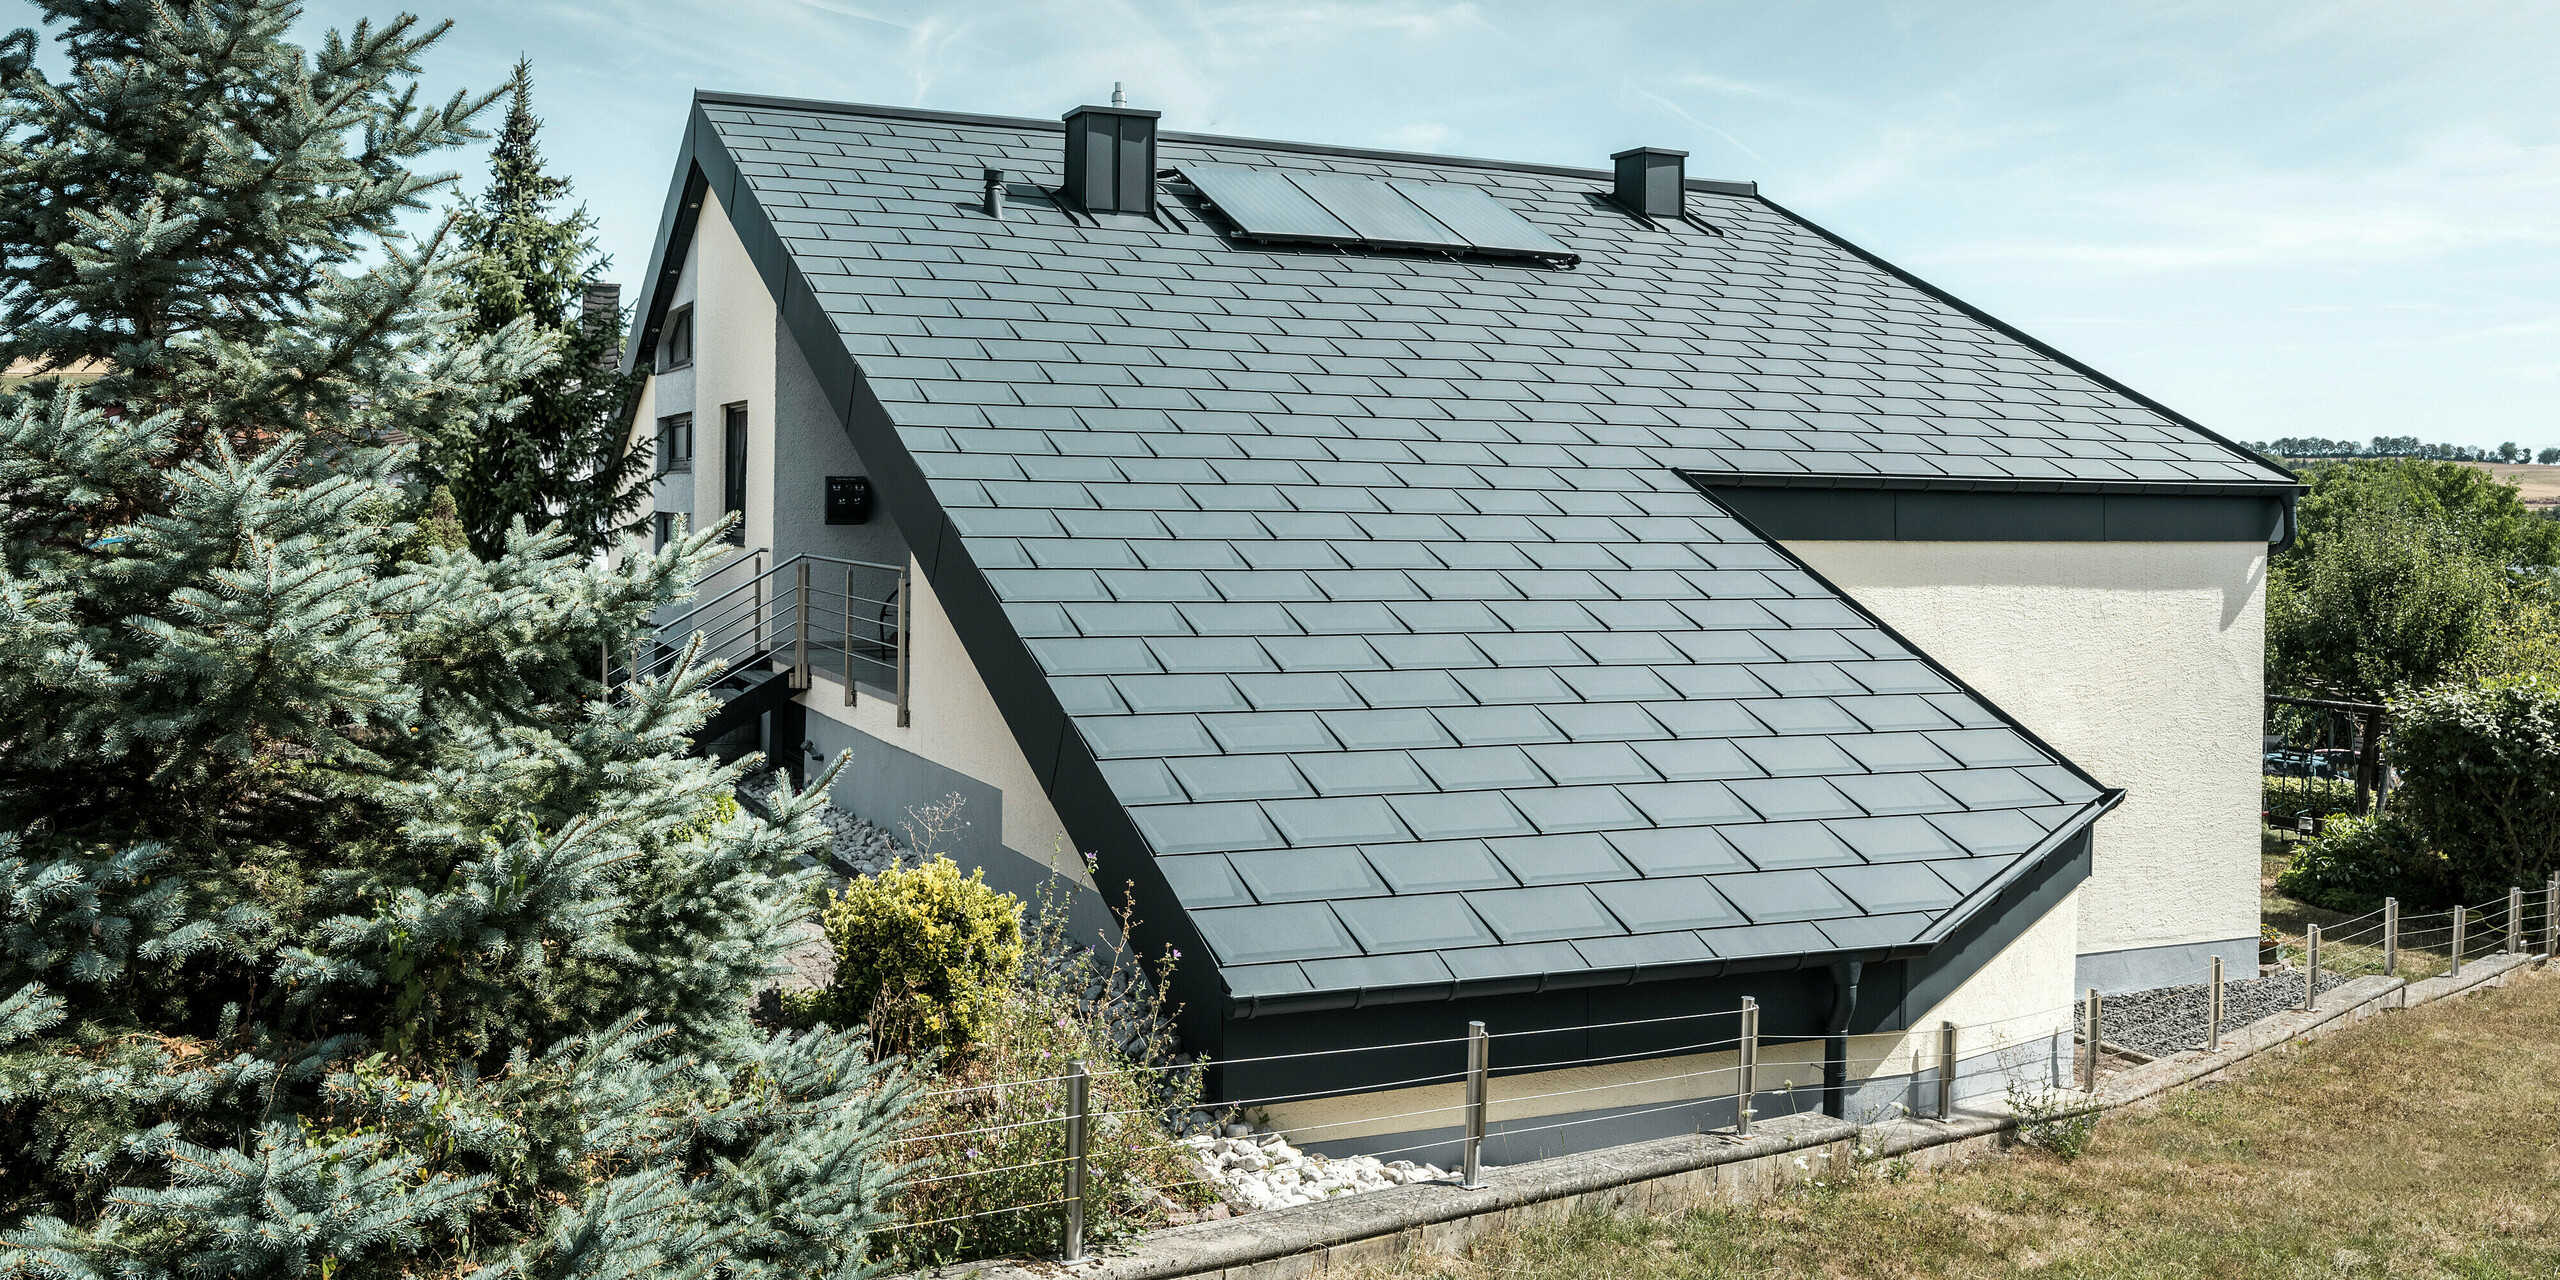 Einfamilienhaus in Newel-Besslich mit PREFA Dachplatte R.16 und PREFA Dachentwässerungssystem in anthrazit